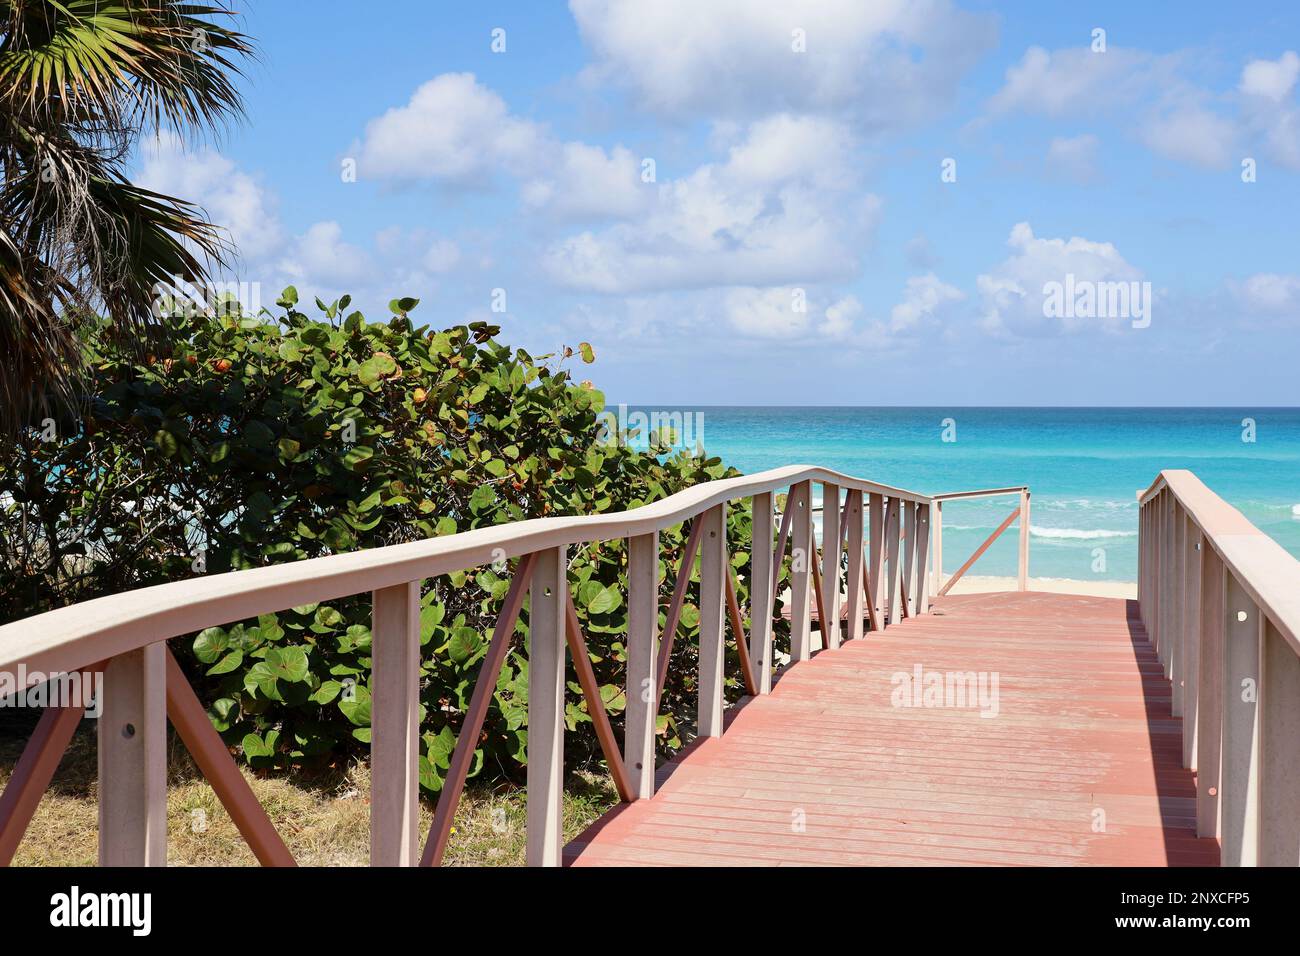 Vue pittoresque sur la plage tropicale avec sable blanc et palmier. Chemin en bois vers la côte de l'océan, station touristique sur l'île ensoleillée Banque D'Images